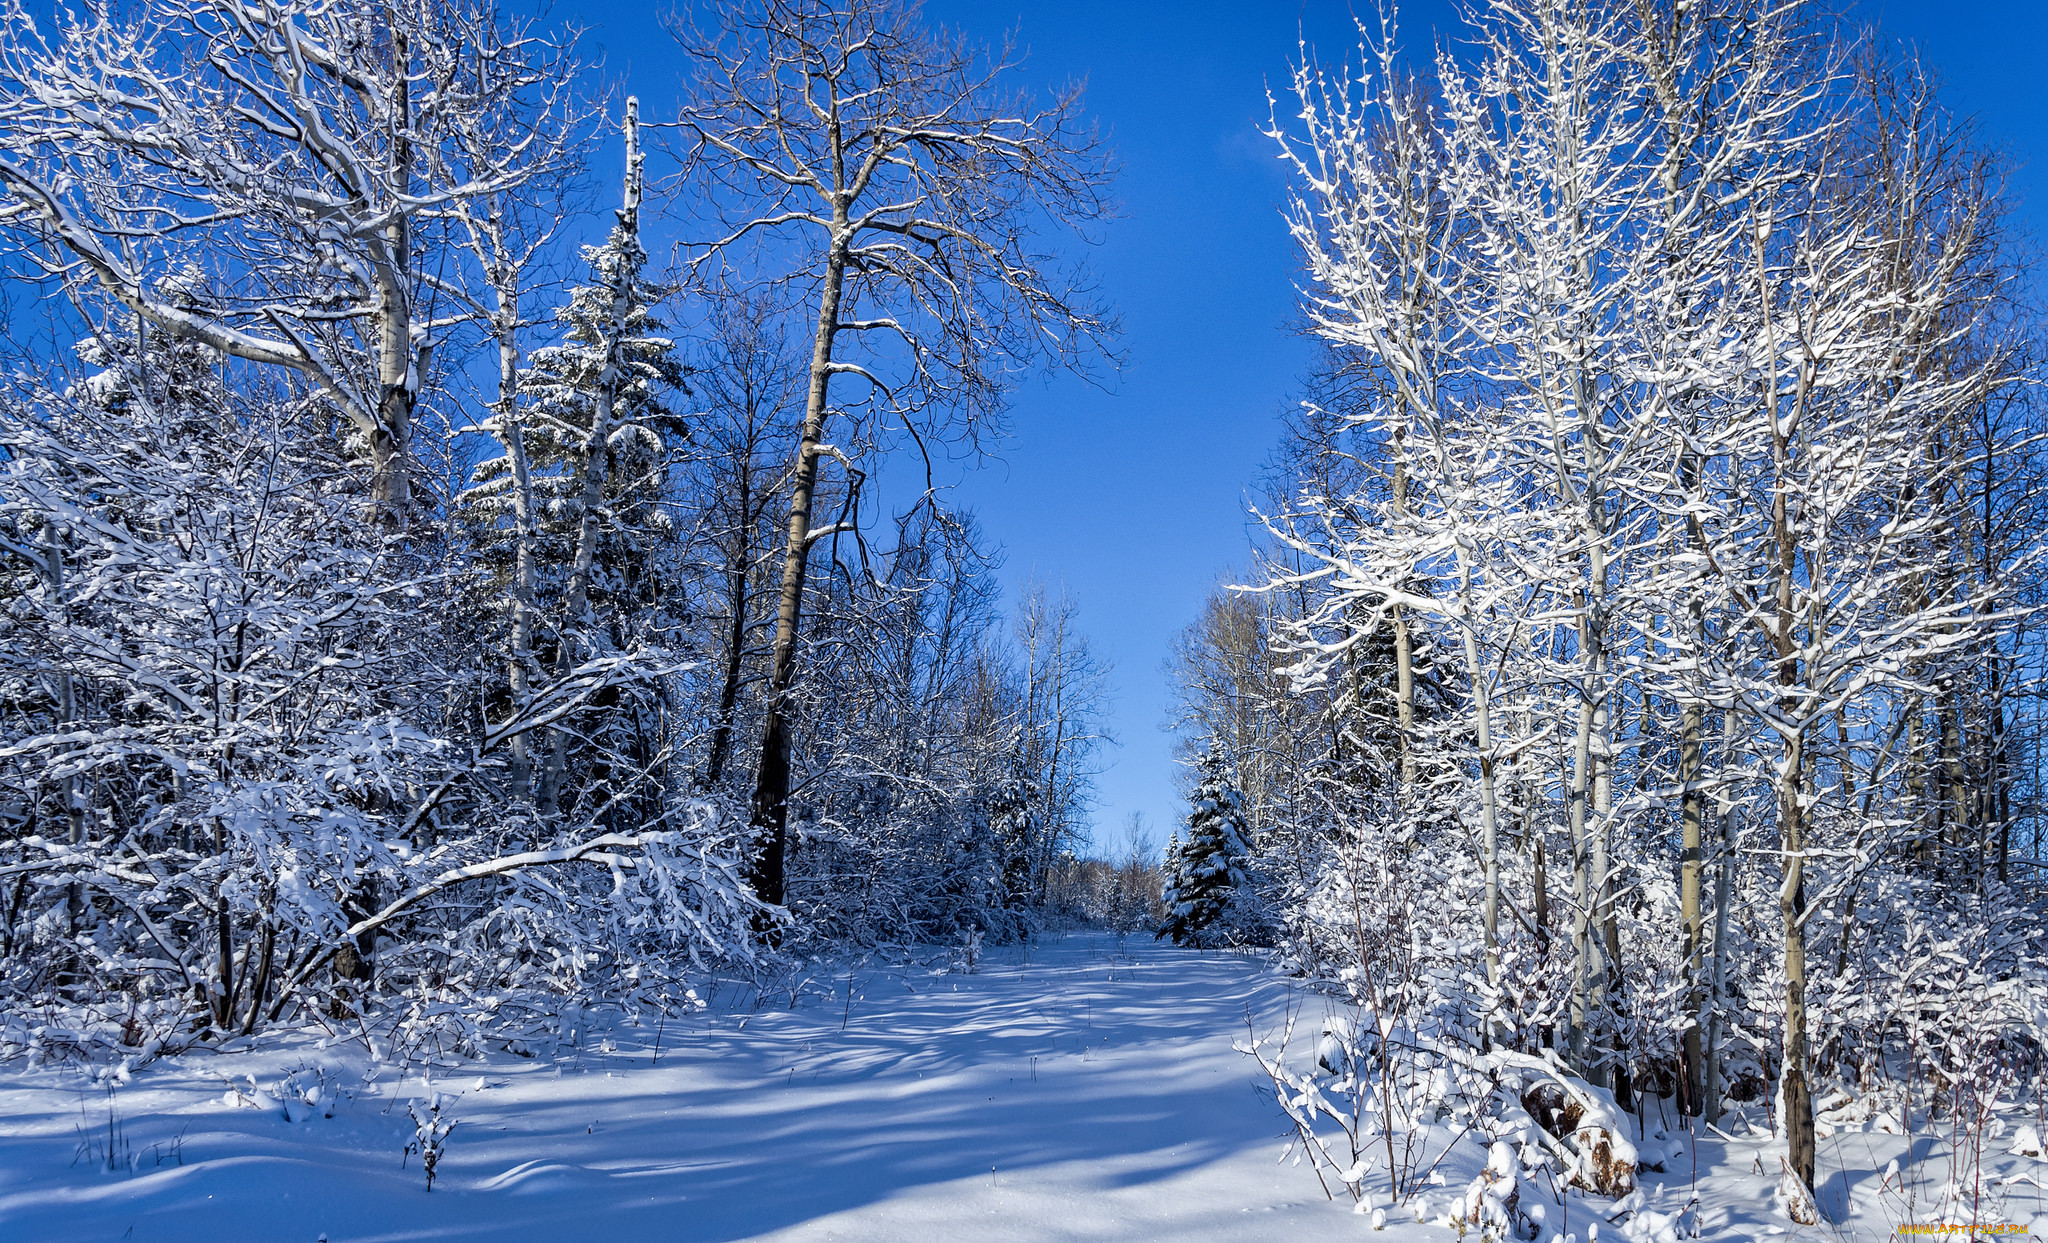 Картинка зимний период. Зимняя природа. Зауралье зима. Красота зимнего леса. Зимняя природа Зауралья.